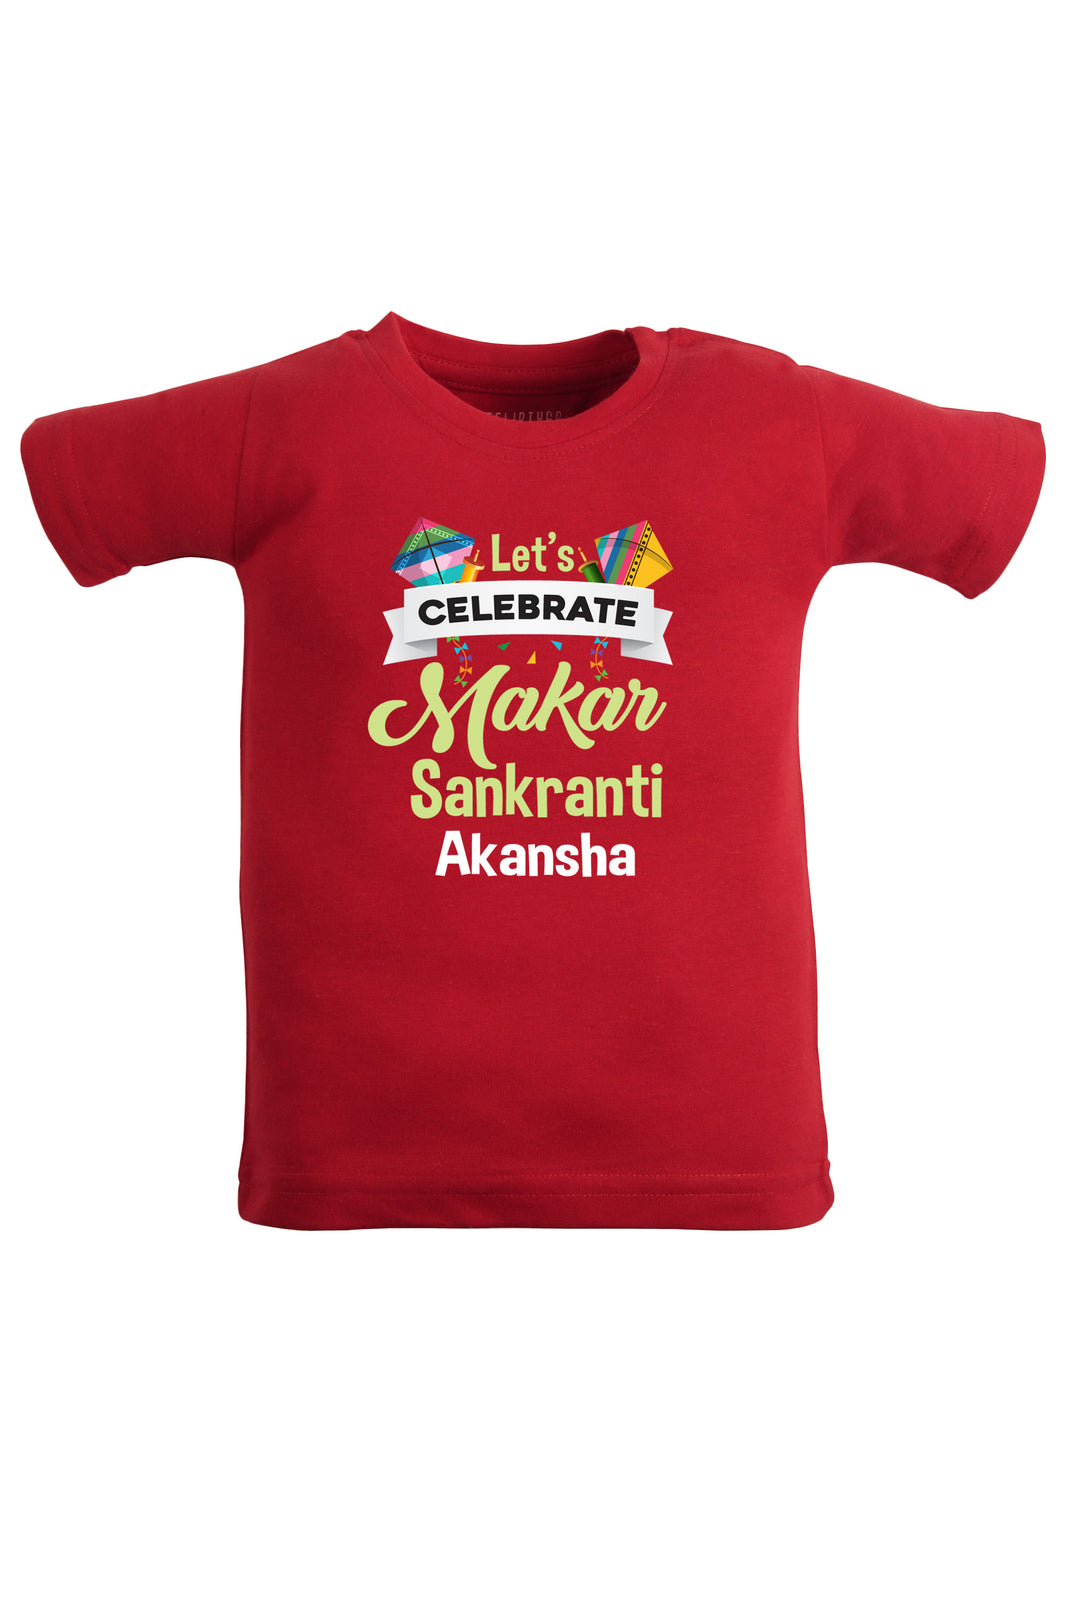 Let's Celebrate Makar Sankranti Custom